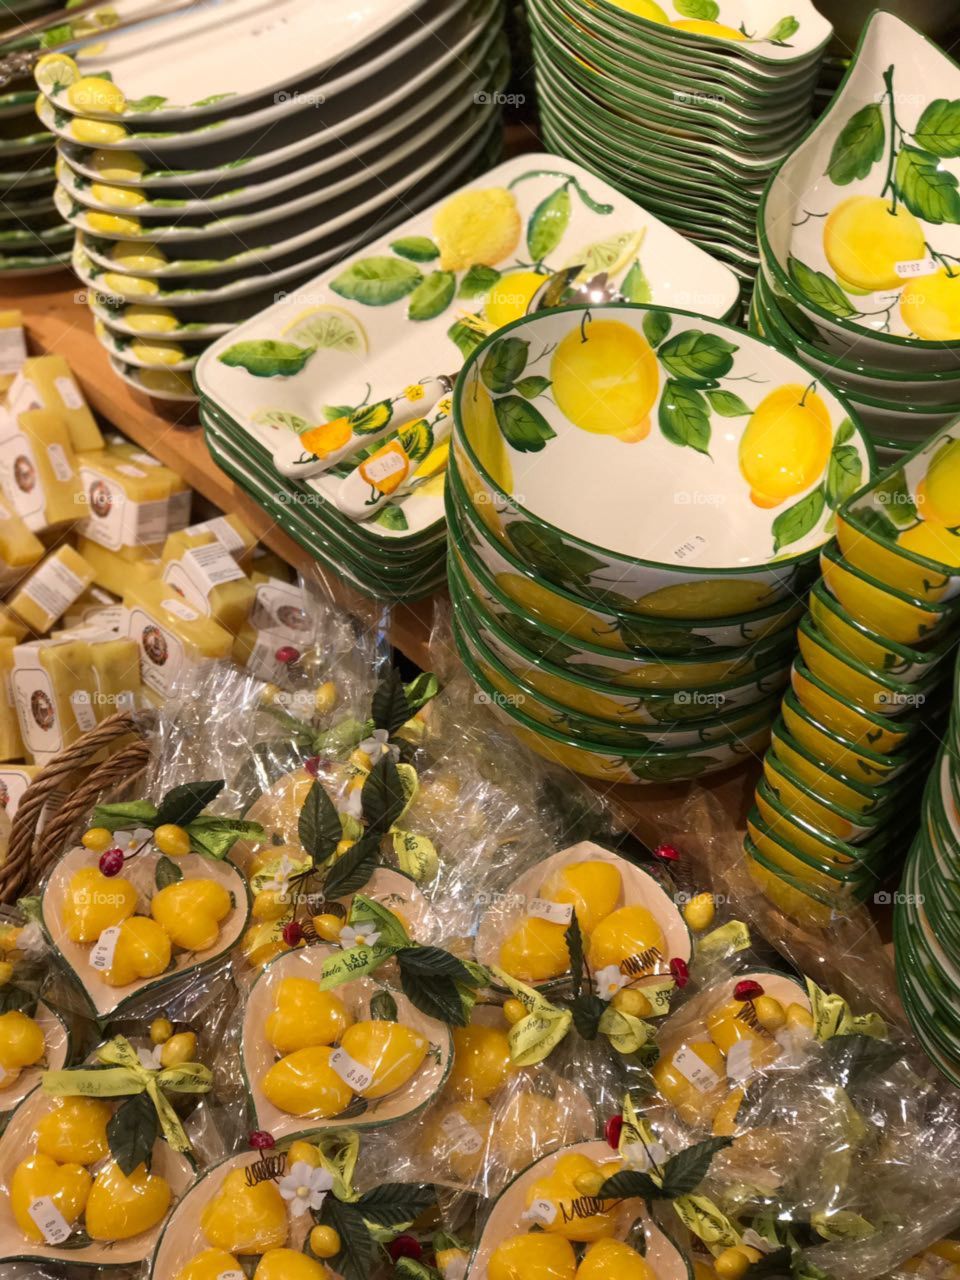 Tradicional ceramic hand made plates and soap with lemon design 